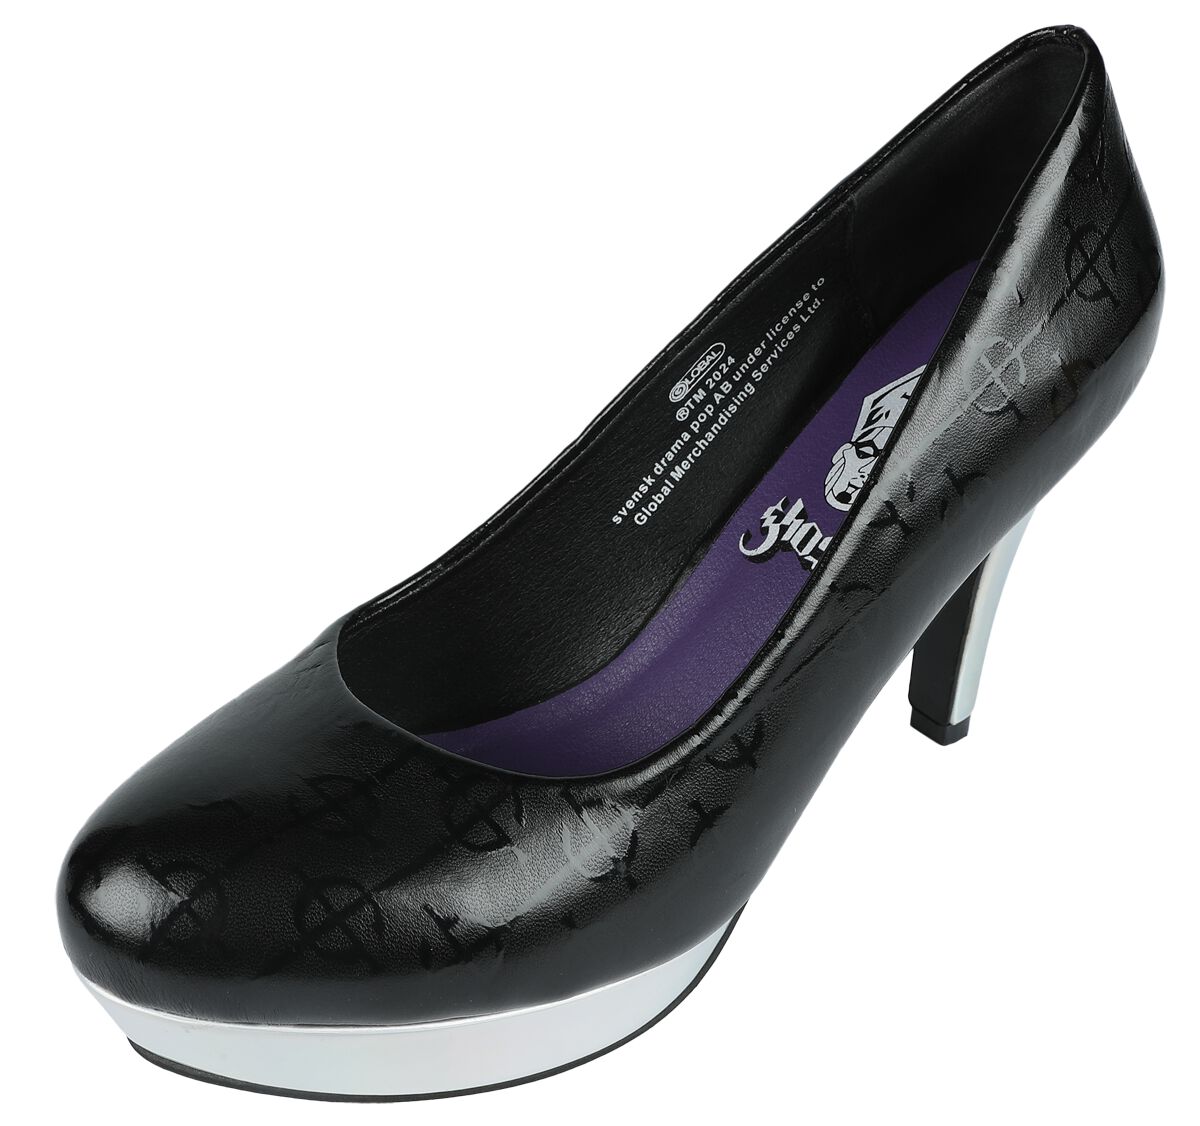 Ghost High Heel - EMP Signature Collection - EU37 bis EU41 - für Damen - Größe EU40 - schwarz/silberfarben  - EMP exklusives Merchandise!